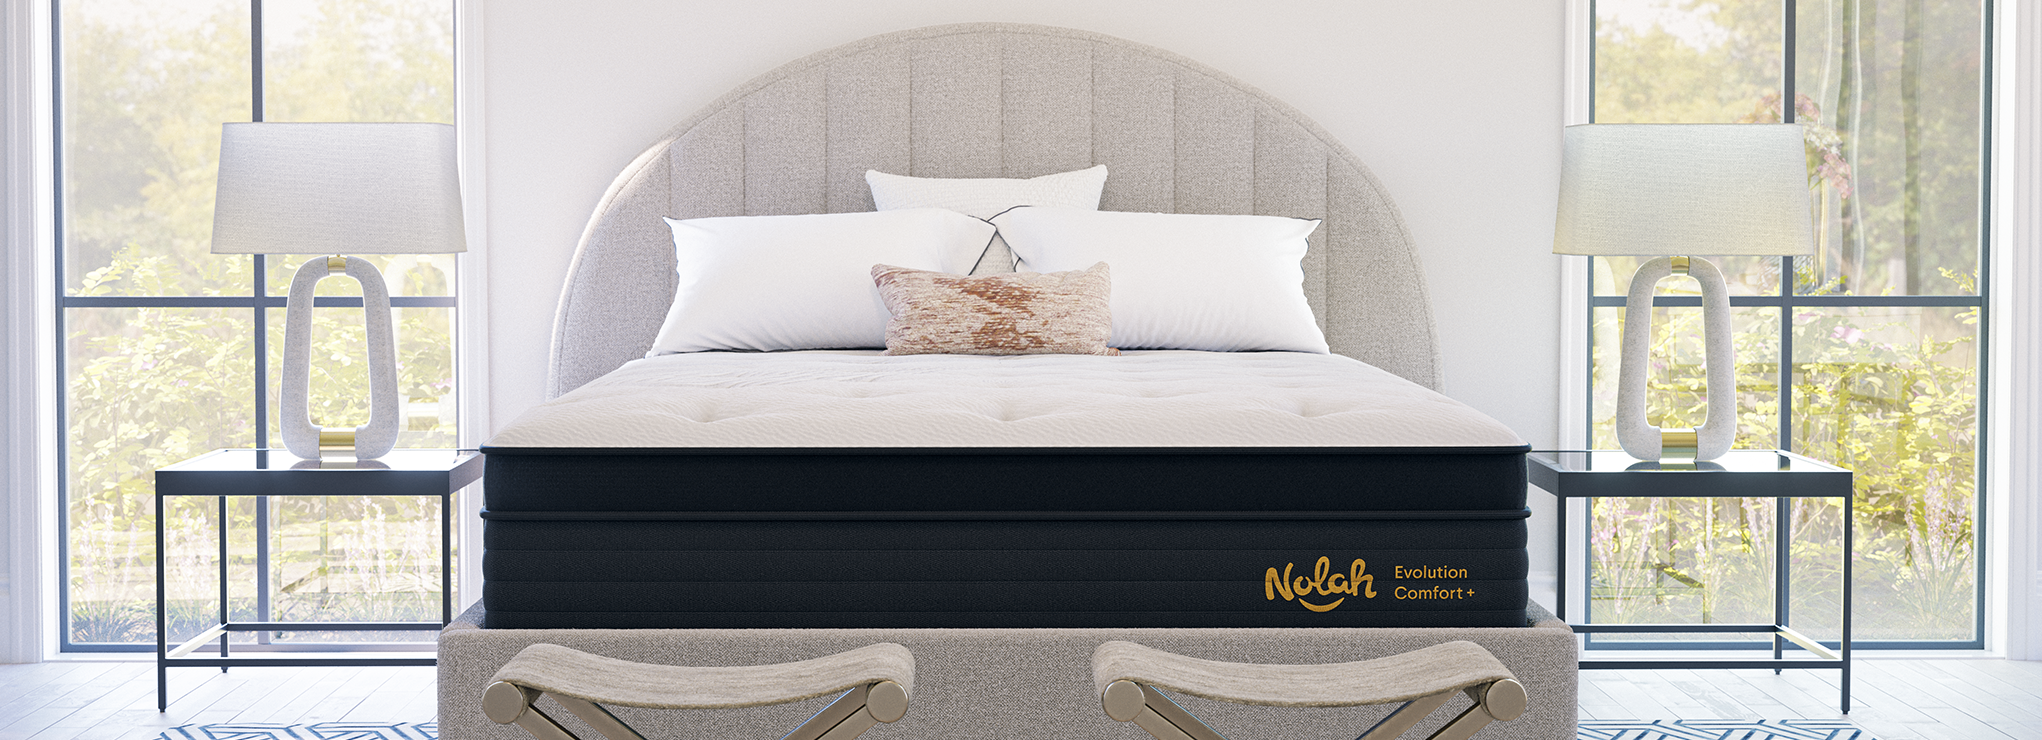 nolah comfort plus hybrid mattress